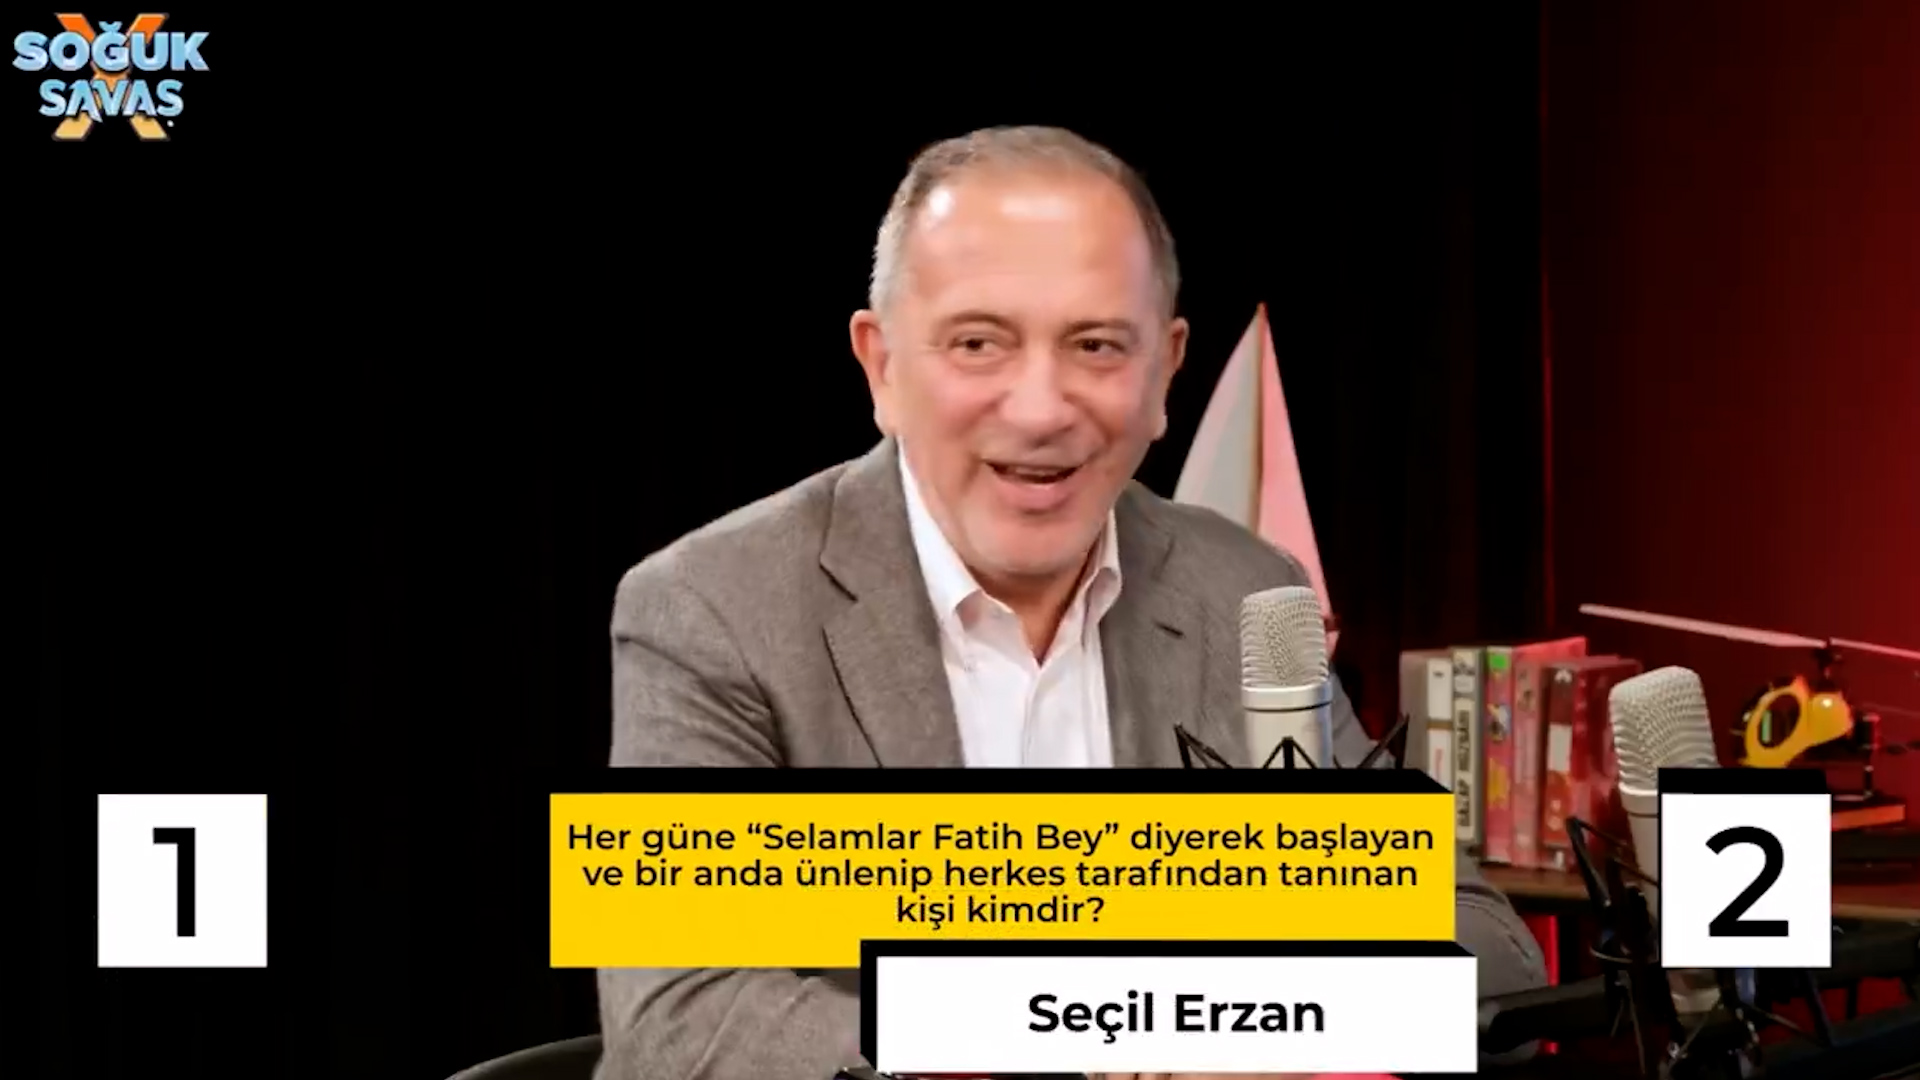 Seçil Erzan ve Fatih Terim arasındaki SMS konuşmaları 'Soğuk Savaş' programında gündem oldu